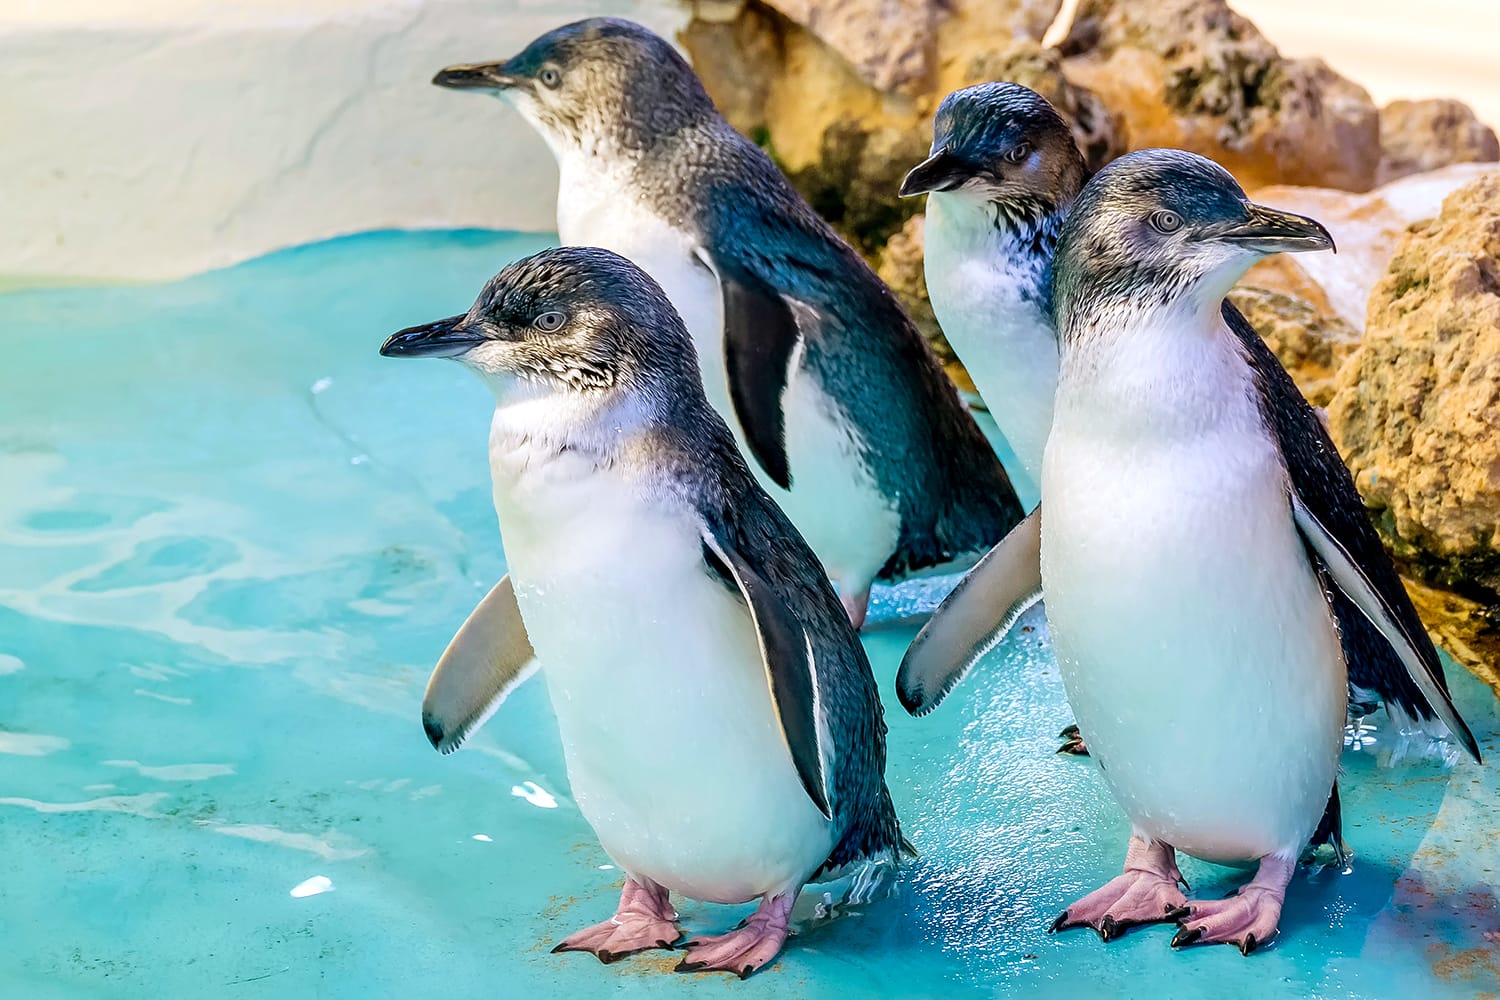 Quatre pingüins australians a Penguin Island, Rockingham, Austràlia Occidental